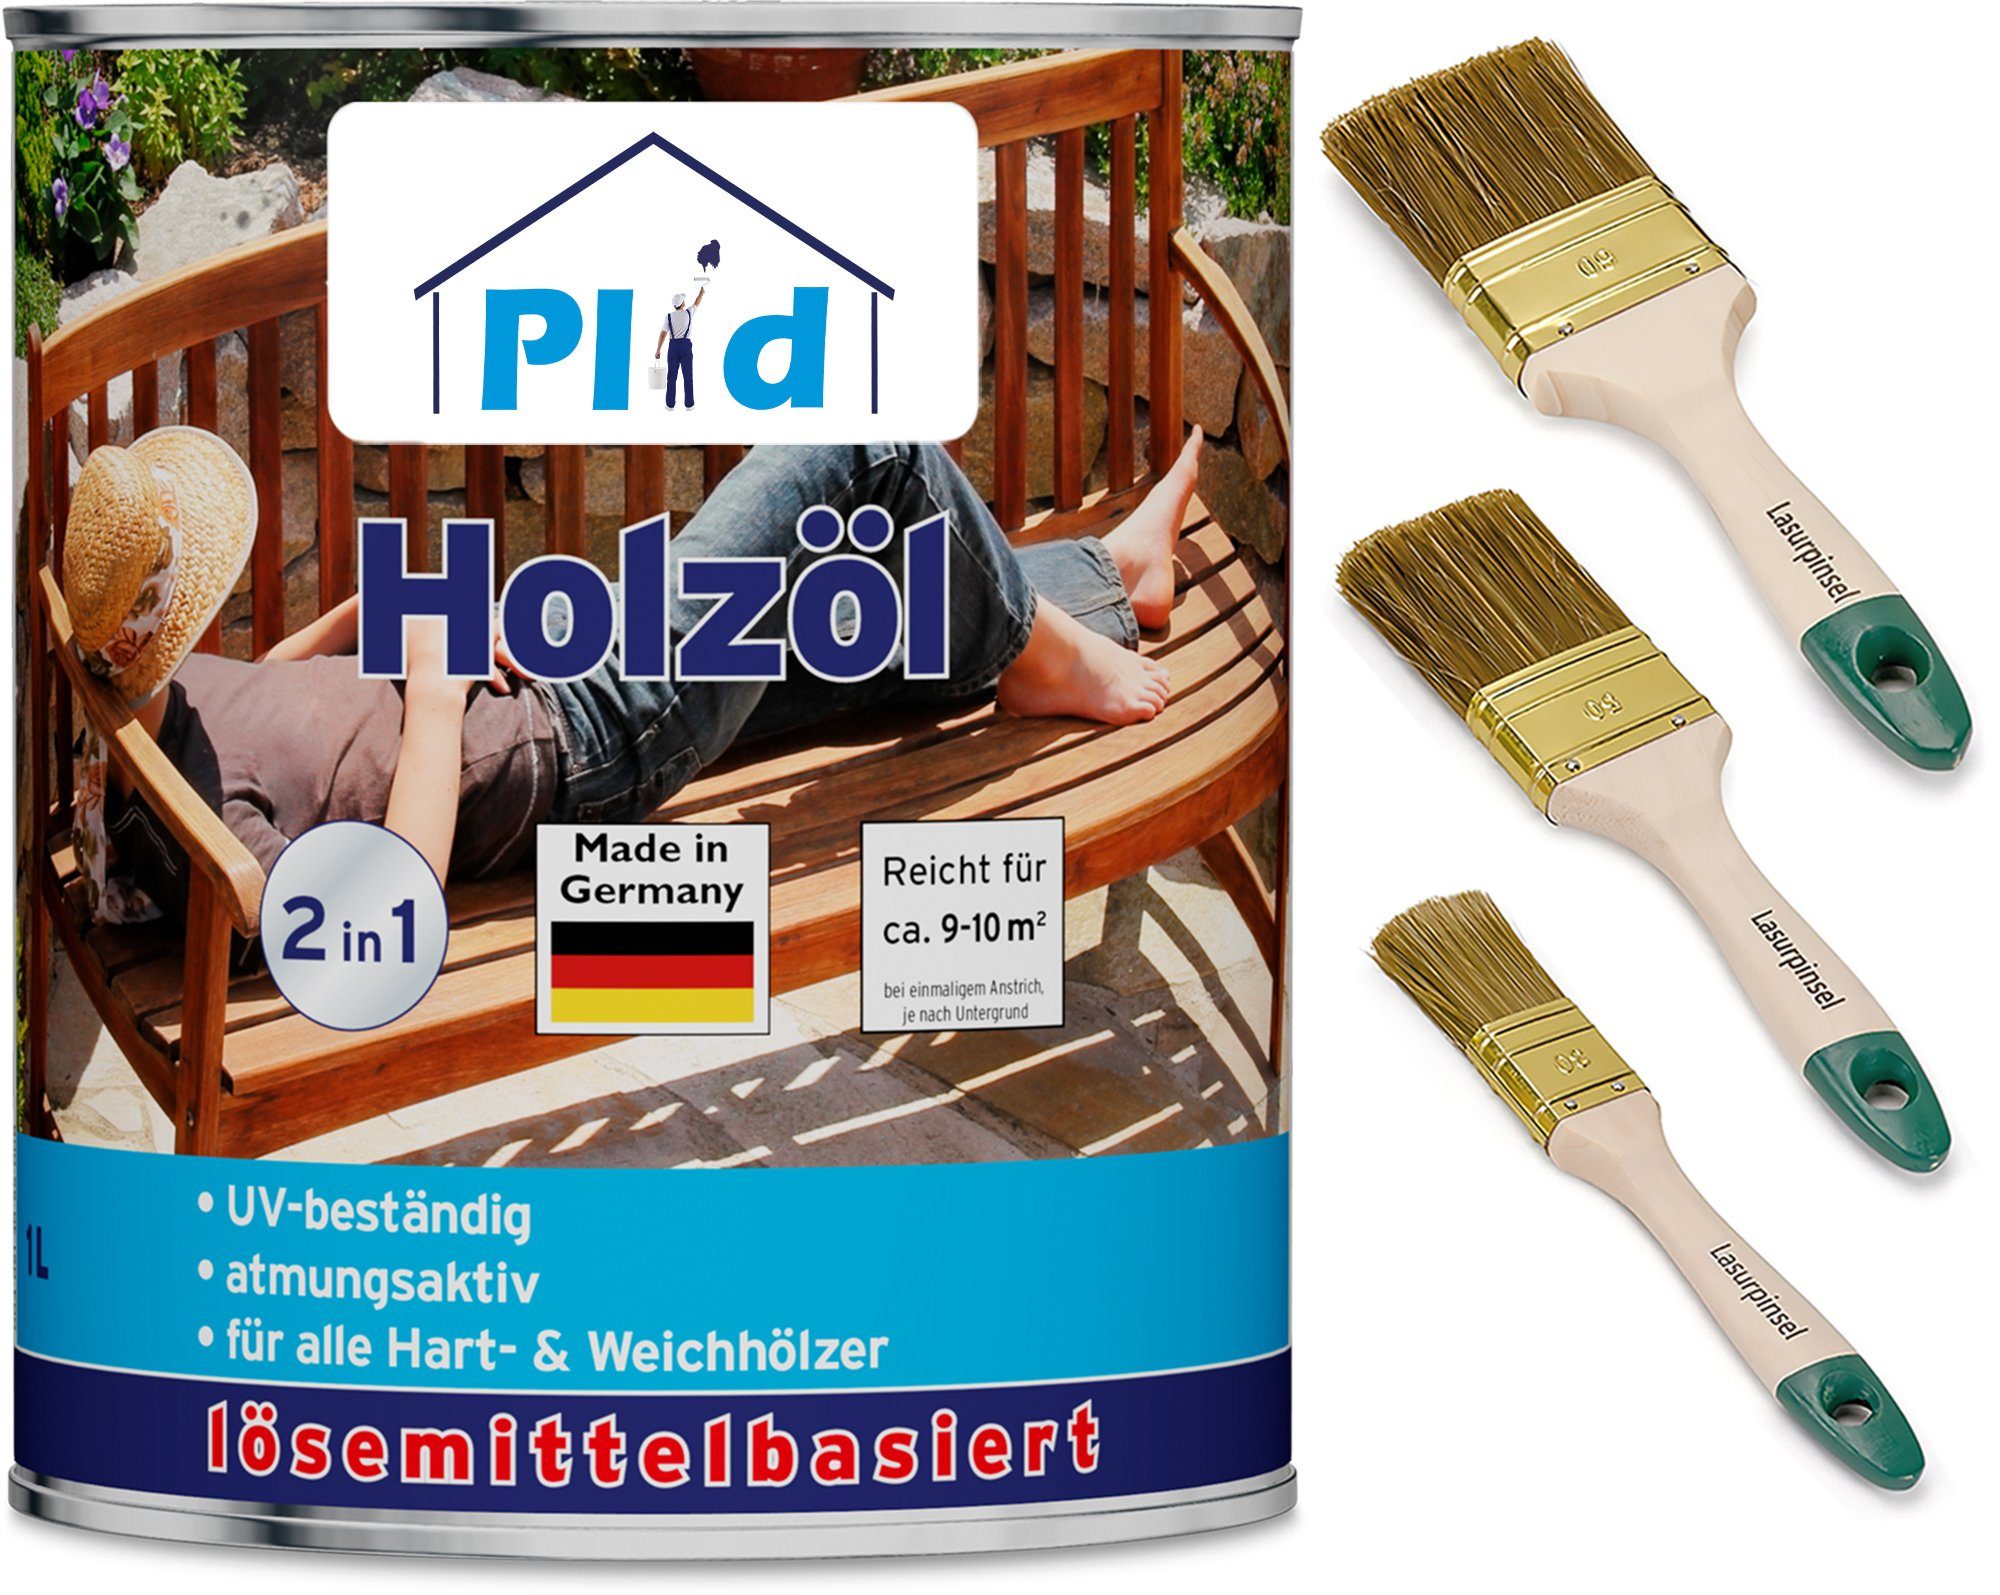 plid Holzöl Premium Holzöl Pinsel Imprägnieröl Teak Holzschutz Pflegeöl